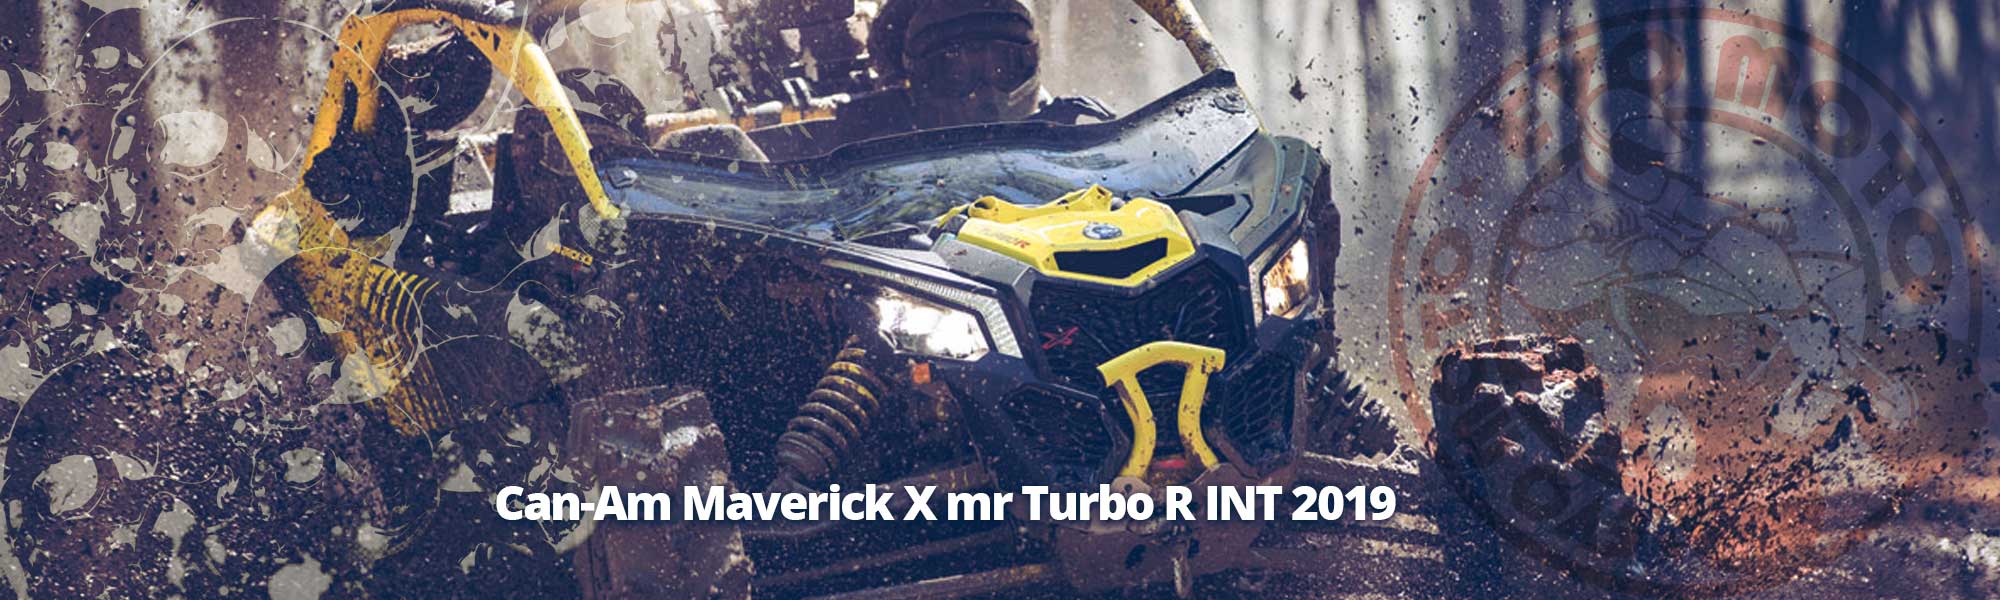 Can-Am Maverick X mr Turbo R INT 2019